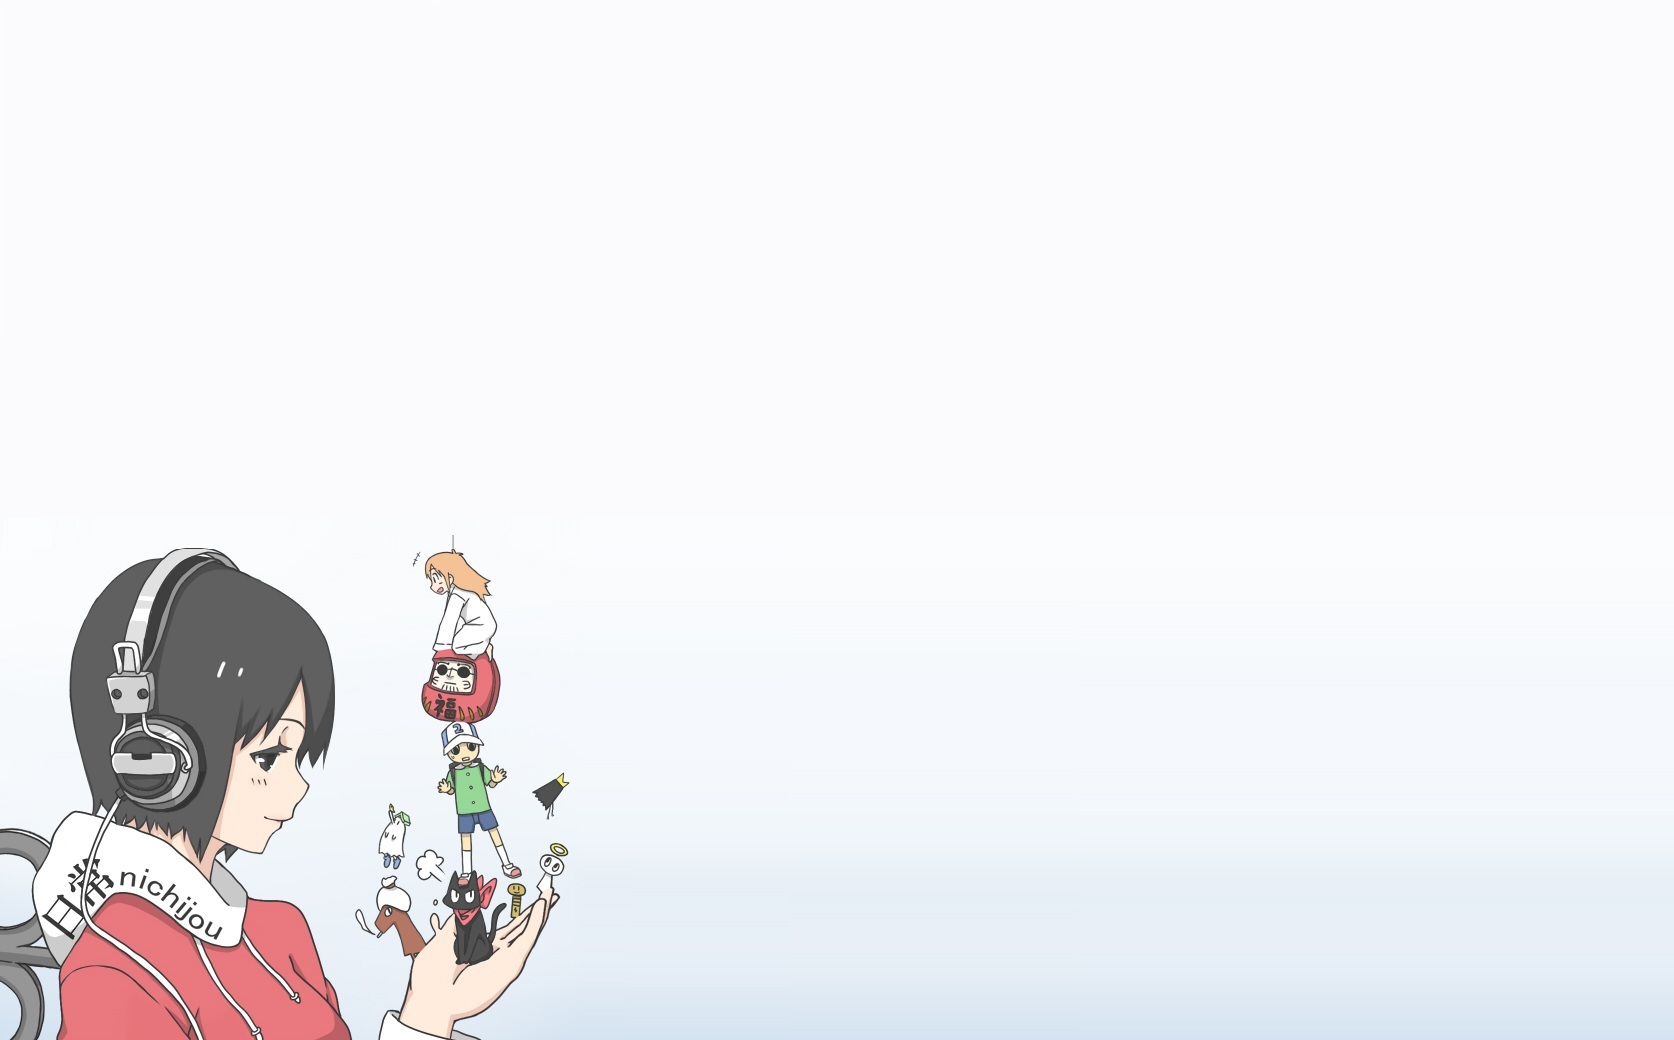 日常 東雲なの はかせ 阪本 ビスケット2号 Nichijou Shinonome Nano Hakaze Sakamoto Biscuit No 2 31 壁紙 厳選アニメ壁紙 アルチビオ Anime Wallpaper